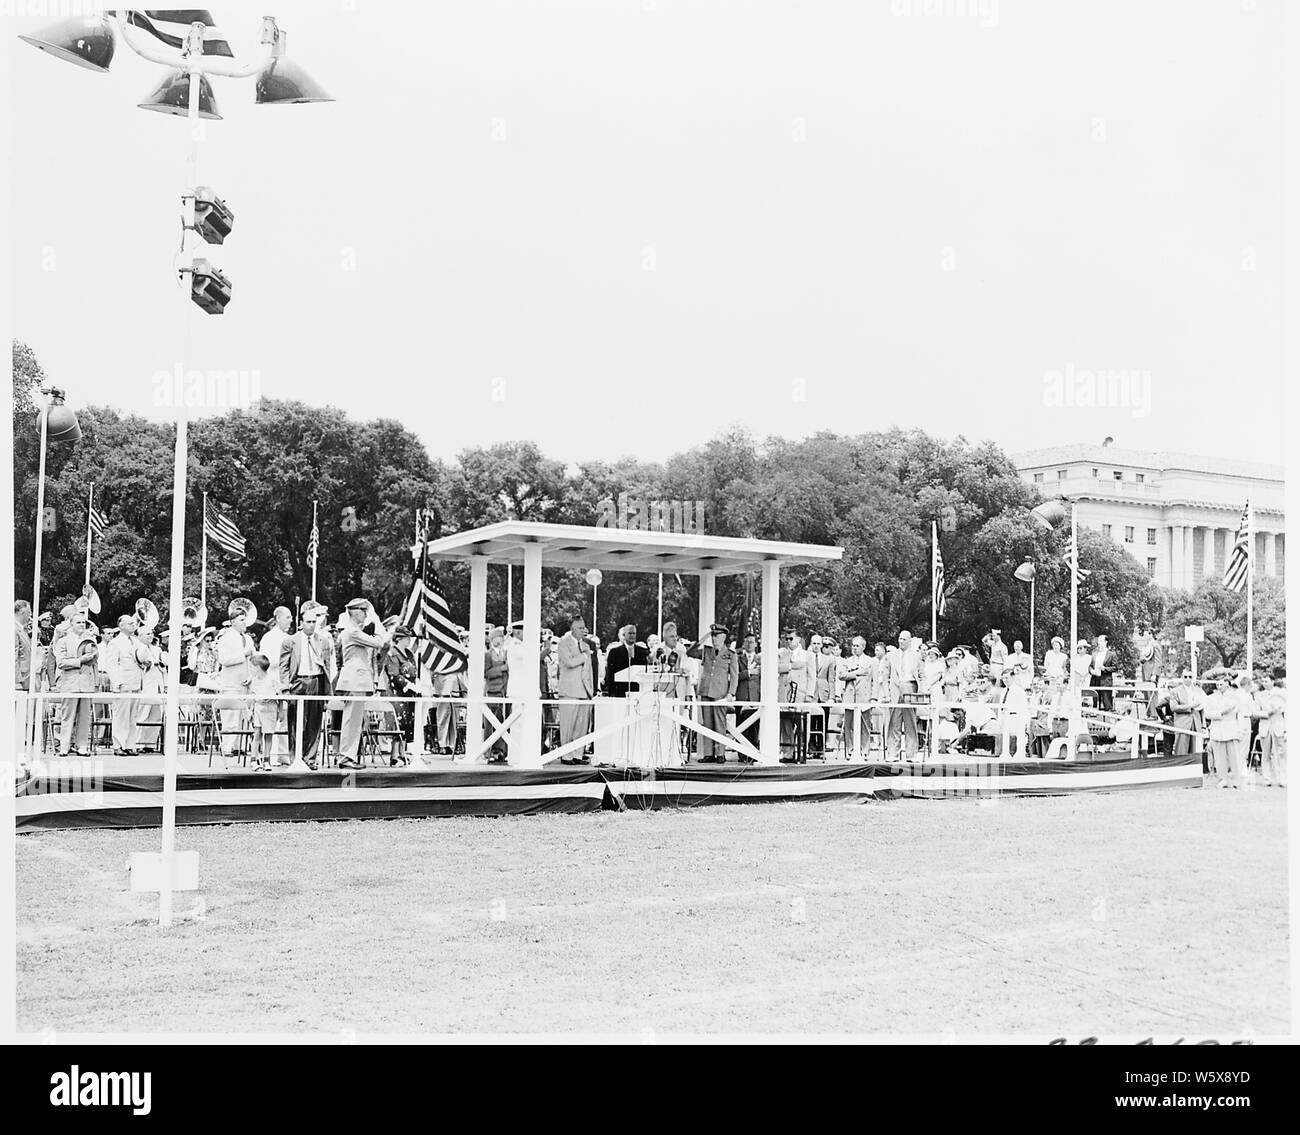 Le président Truman assiste aux cérémonies célébrant le 100e anniversaire du Washington Monument. Il est dans le stand de révision. Banque D'Images